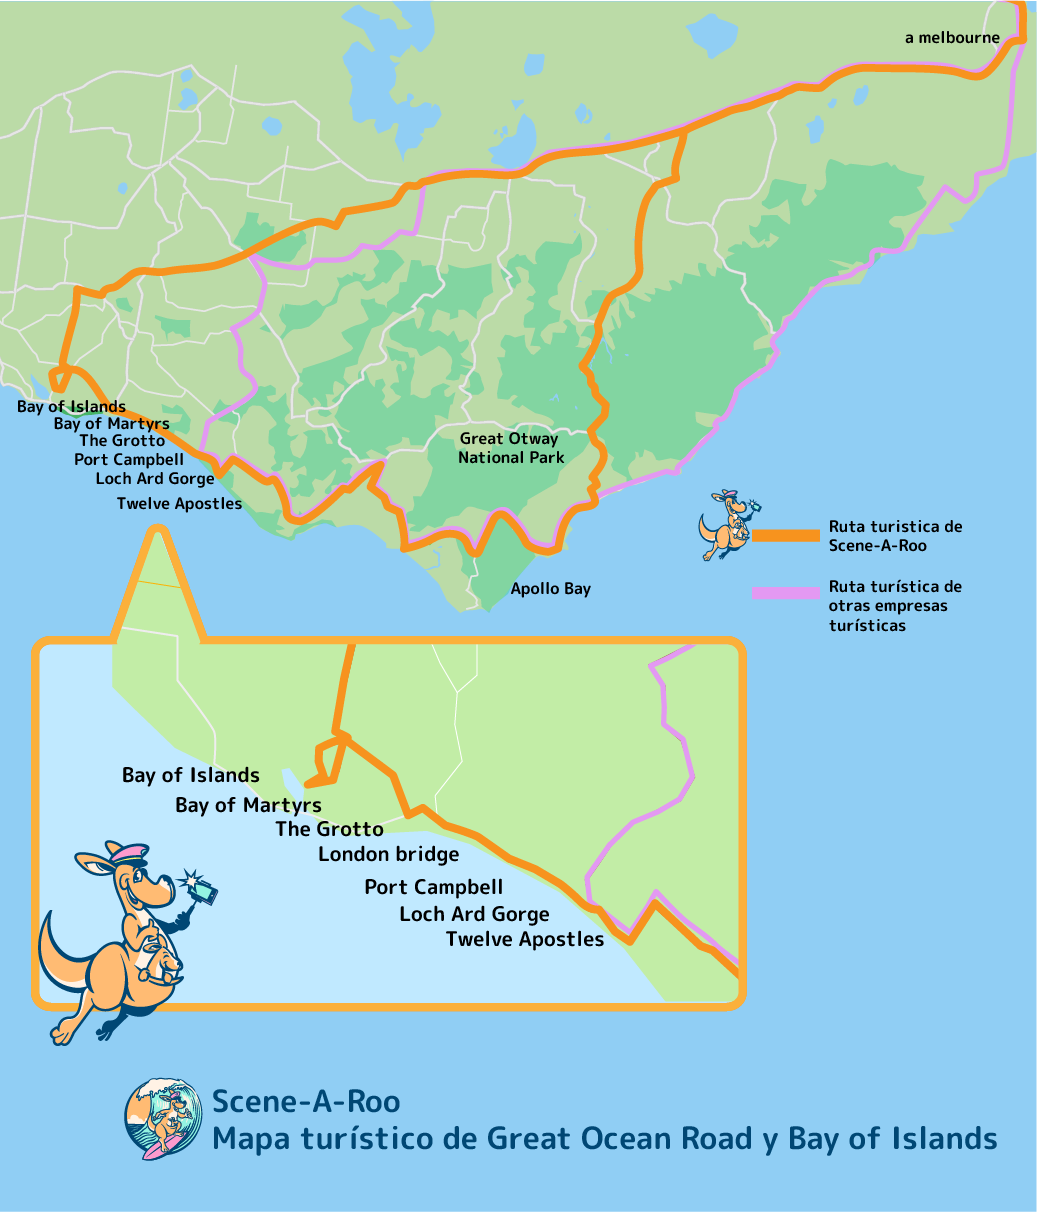 Scene-A-Roo tour Mapa turístico de Great Ocean Road y Bay of Islands